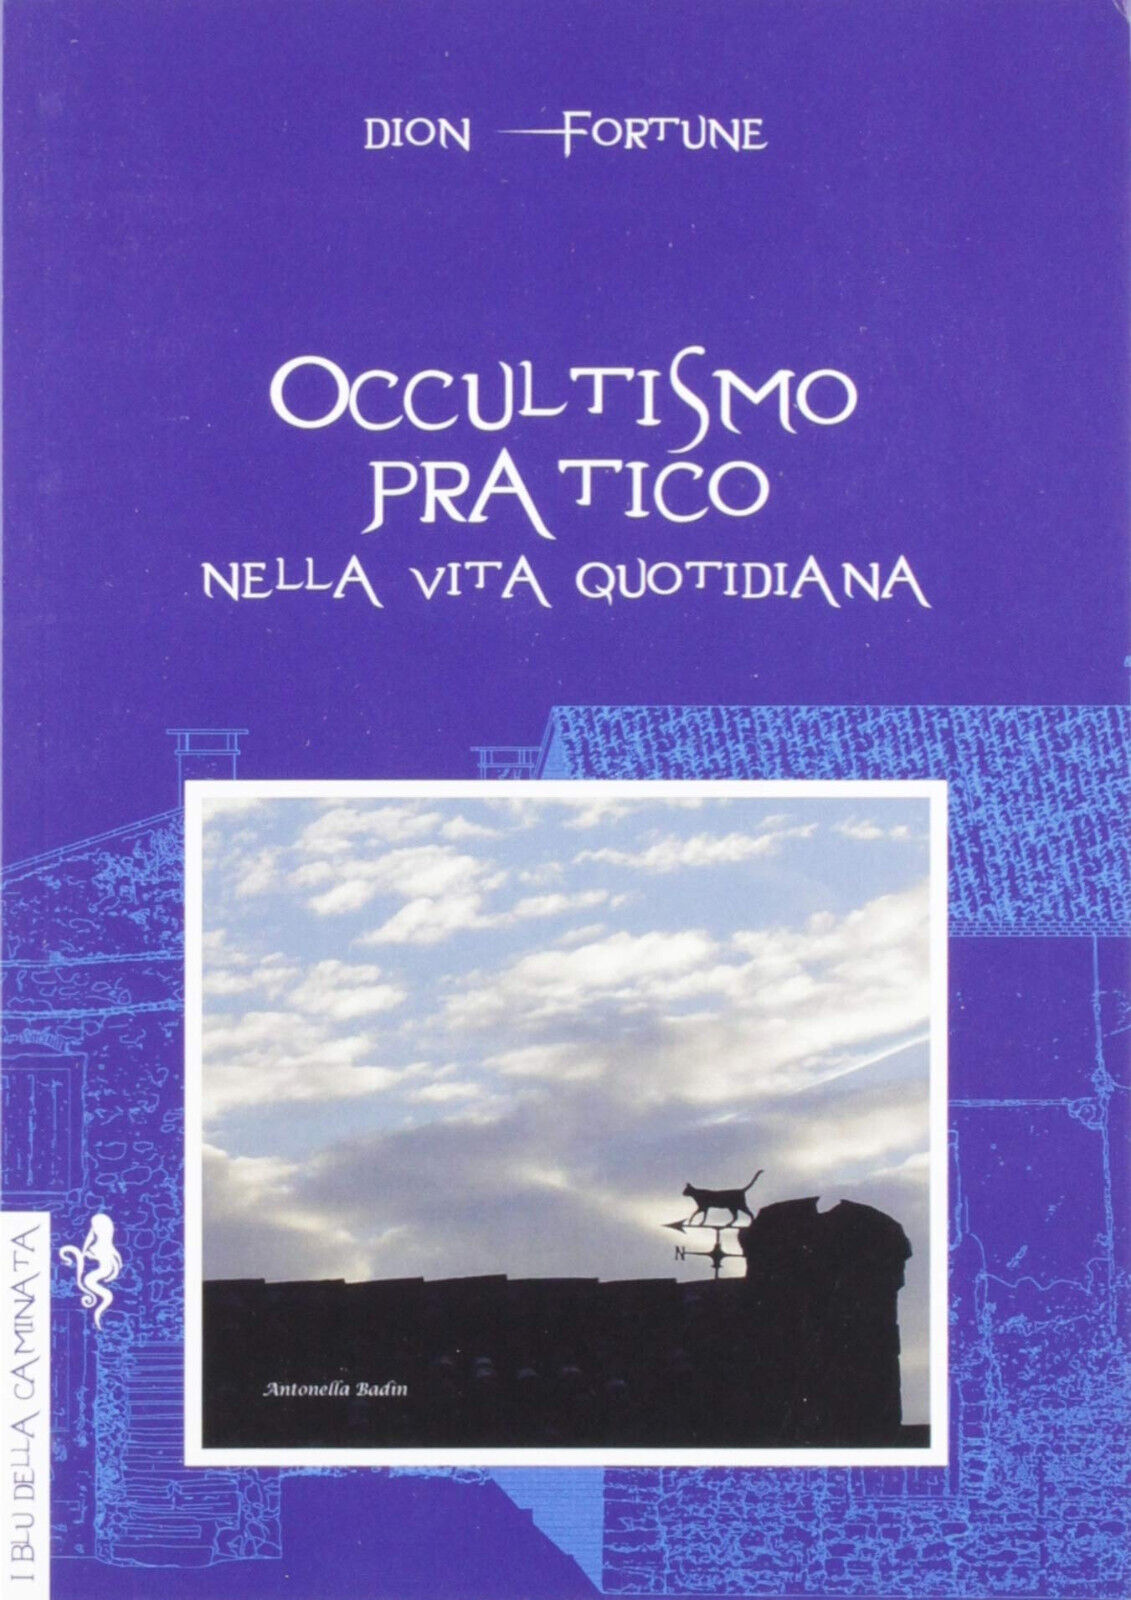 Occultismo pratico. Nella vita quotidiana - Dion Fortune - Anguana Edizioni,2019 libro usato